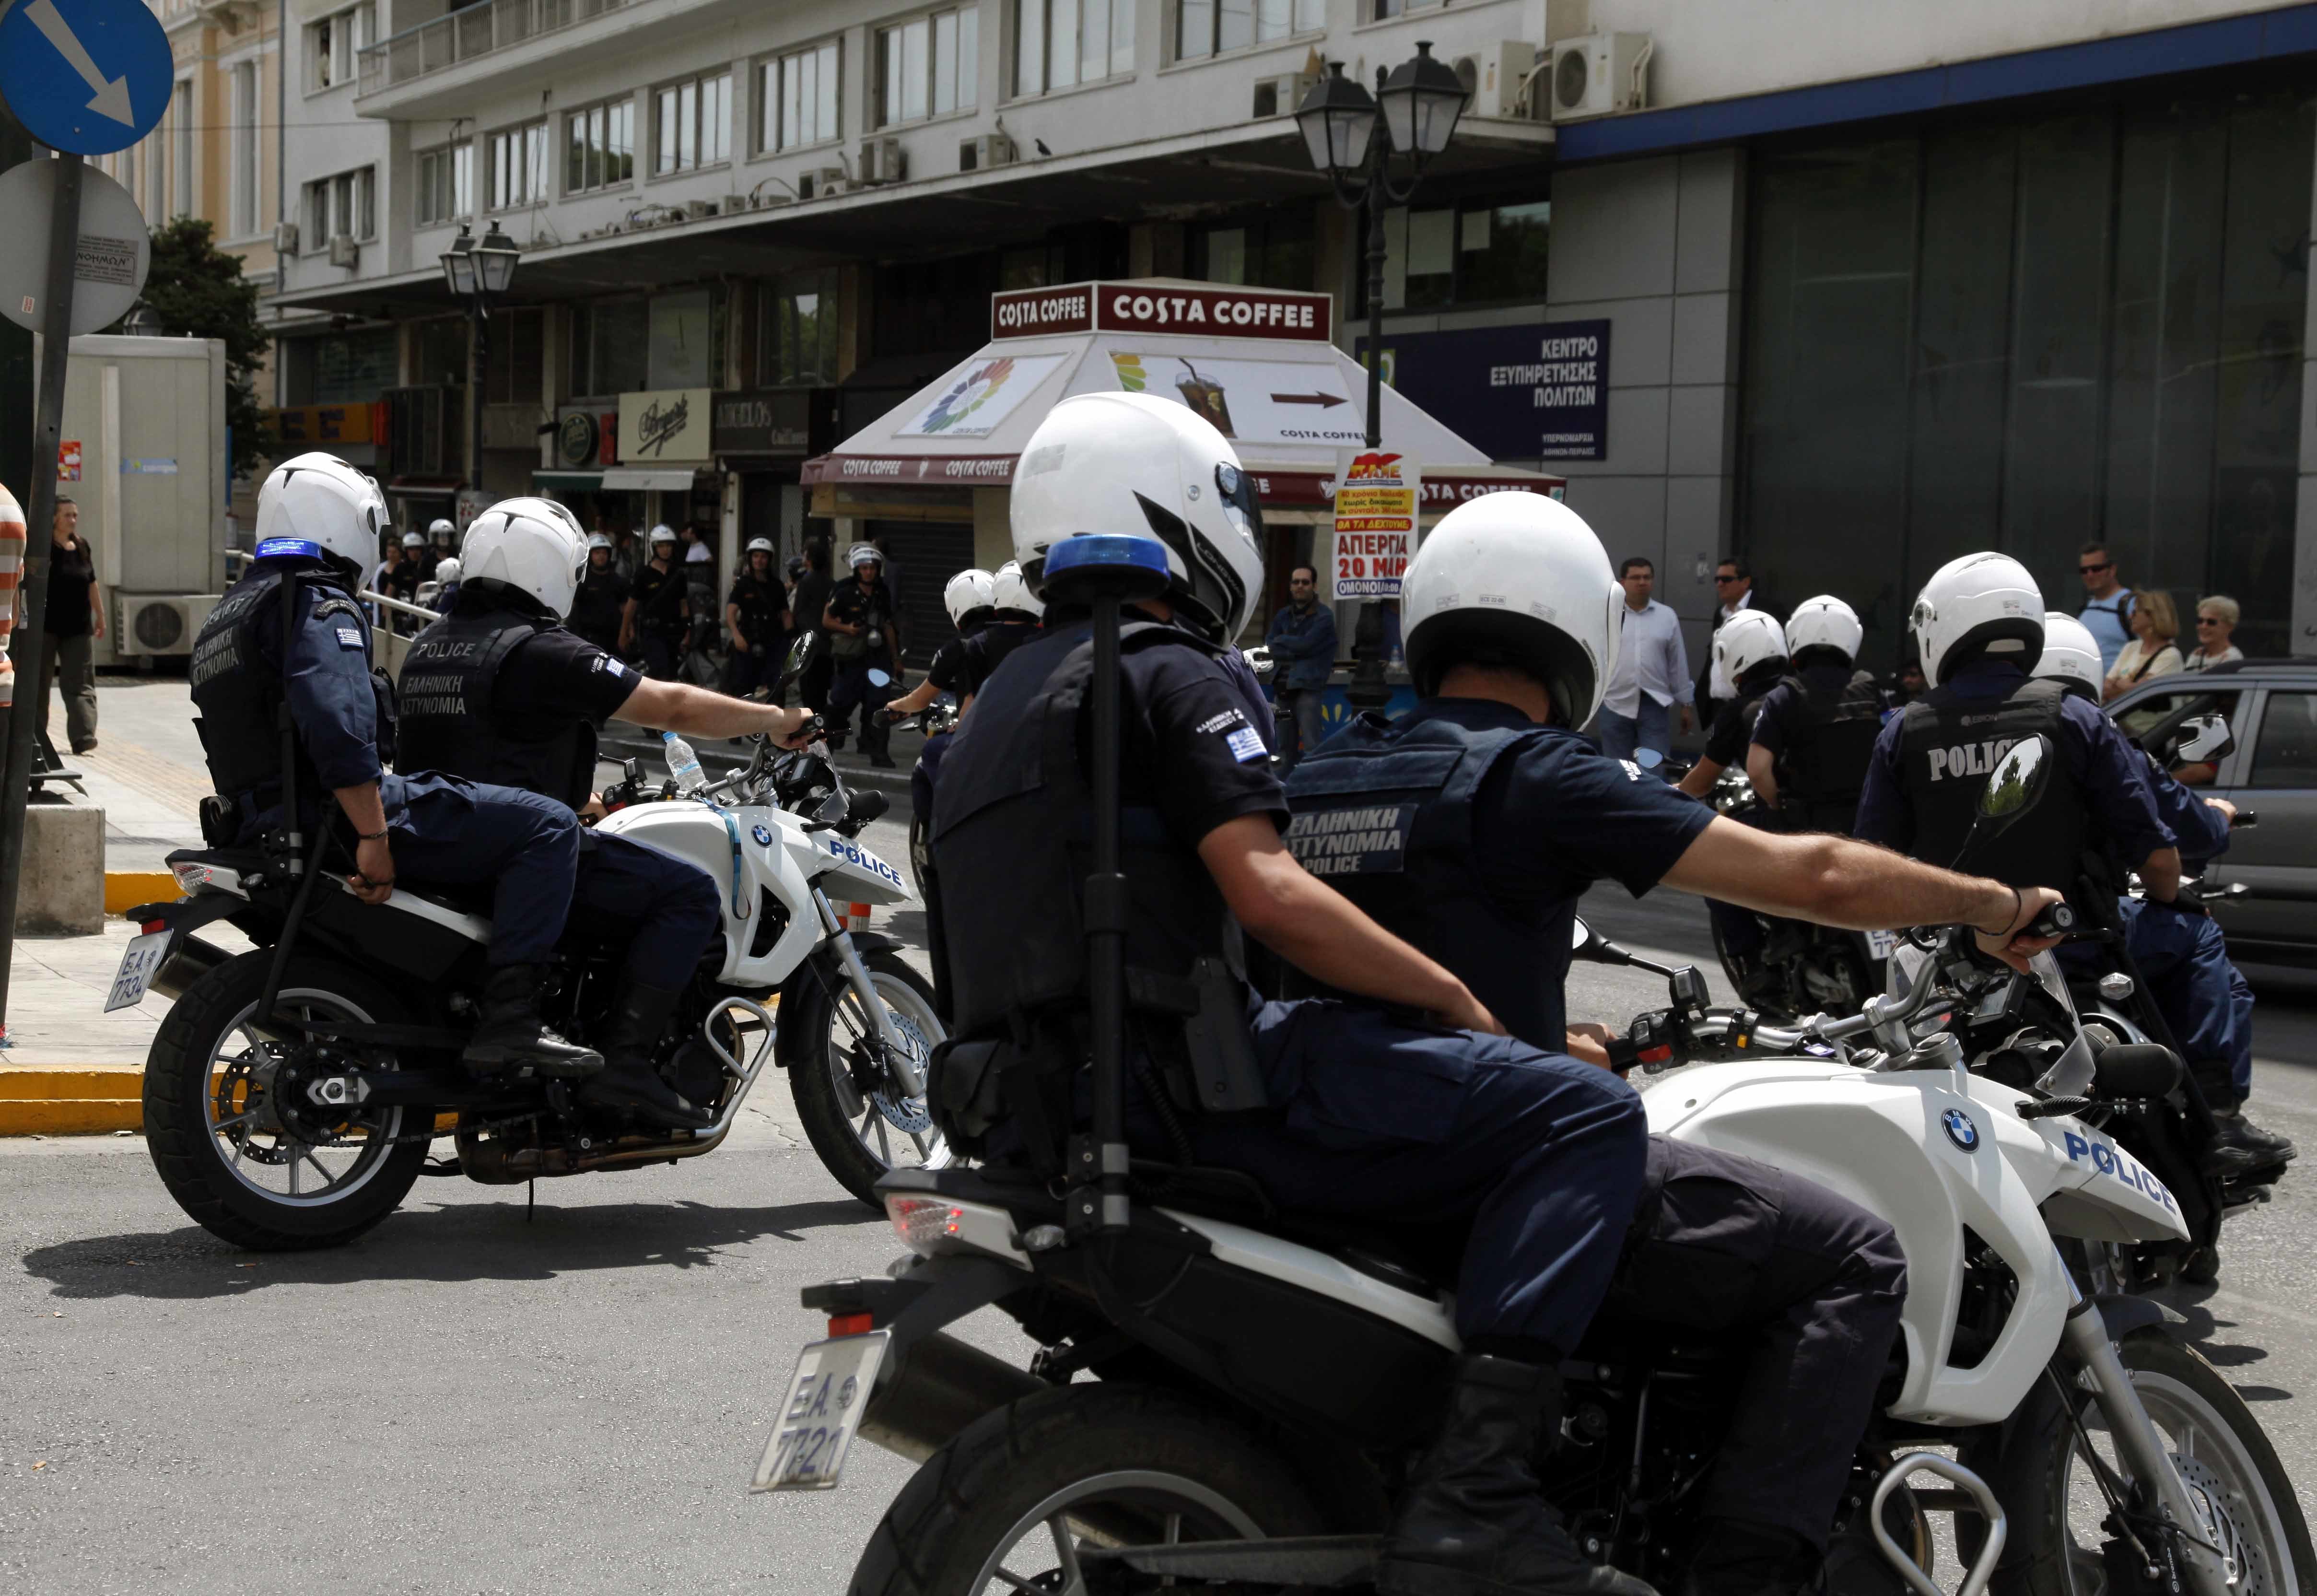 Επιτέλους! Αφήνουν τους επίσημους και θα προσέχουν τους πολίτες! – Επιστρέφουν στους… δρόμους 1.500 αστυνομικοί